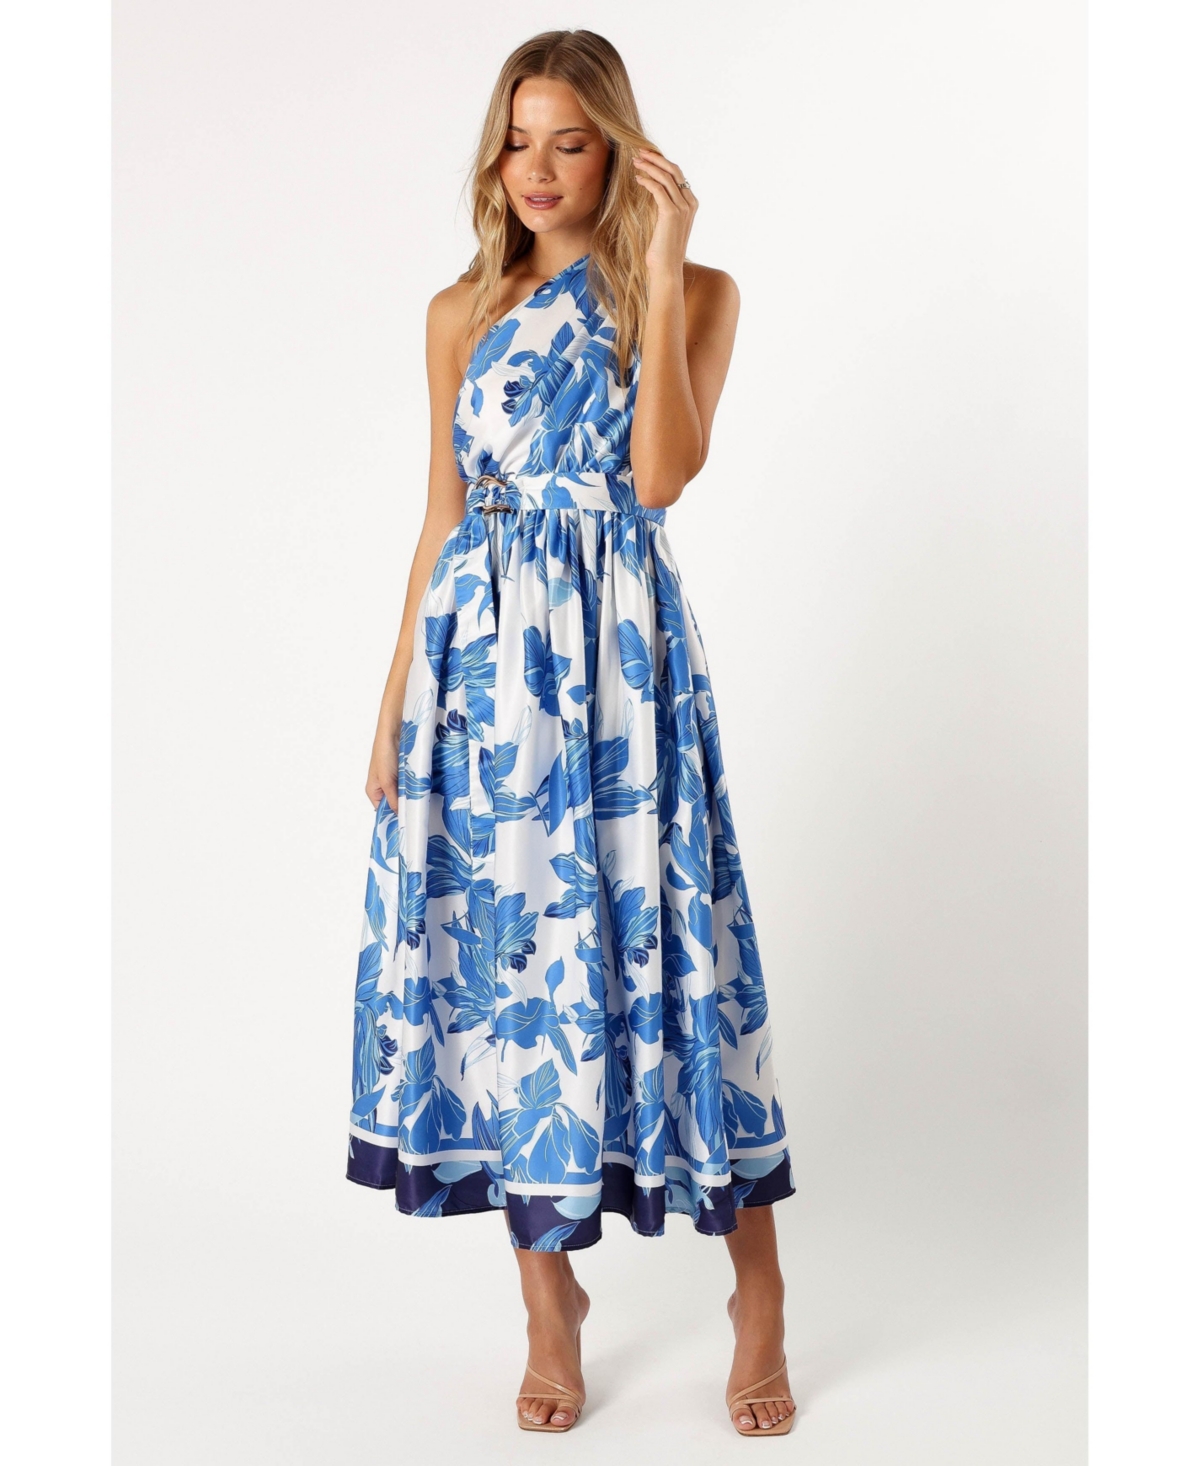 Naomi One Shoulder Midi Dress - Blue floral